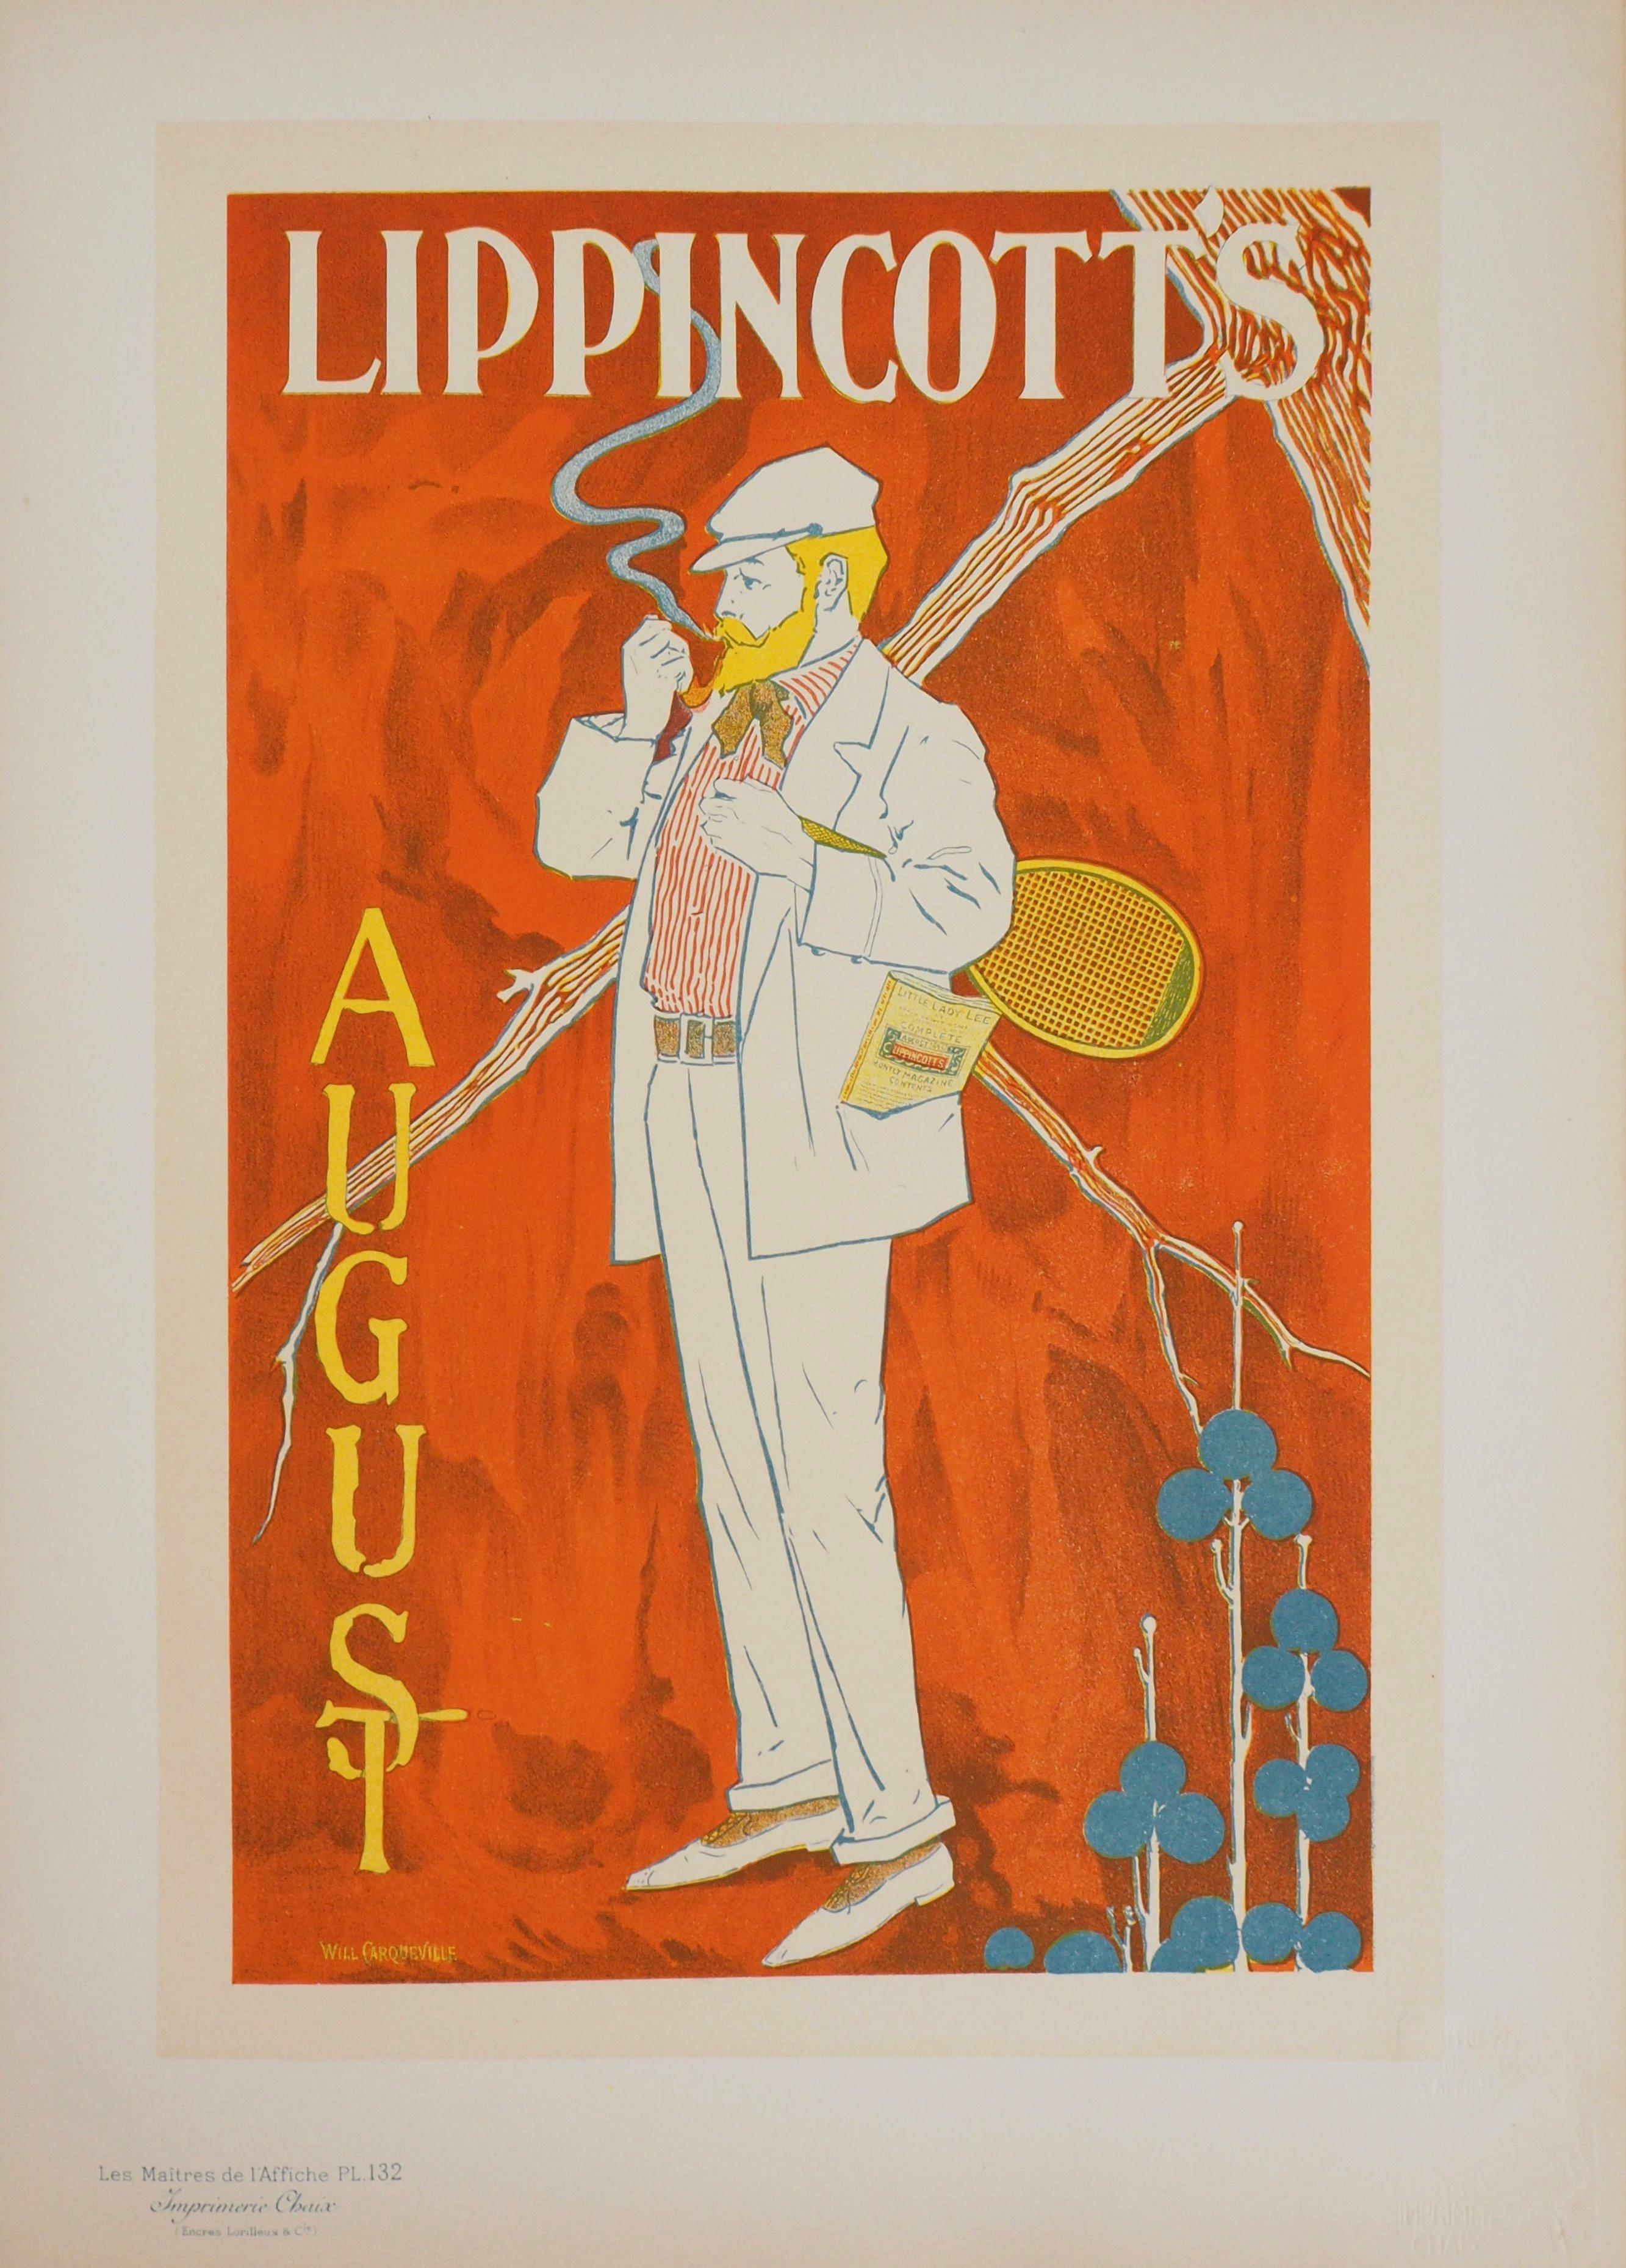 Tennis player (Lippincott's) - Lithograph (Les Maîtres de l'Affiche), 1897 - Print by William CARQUEVILLE